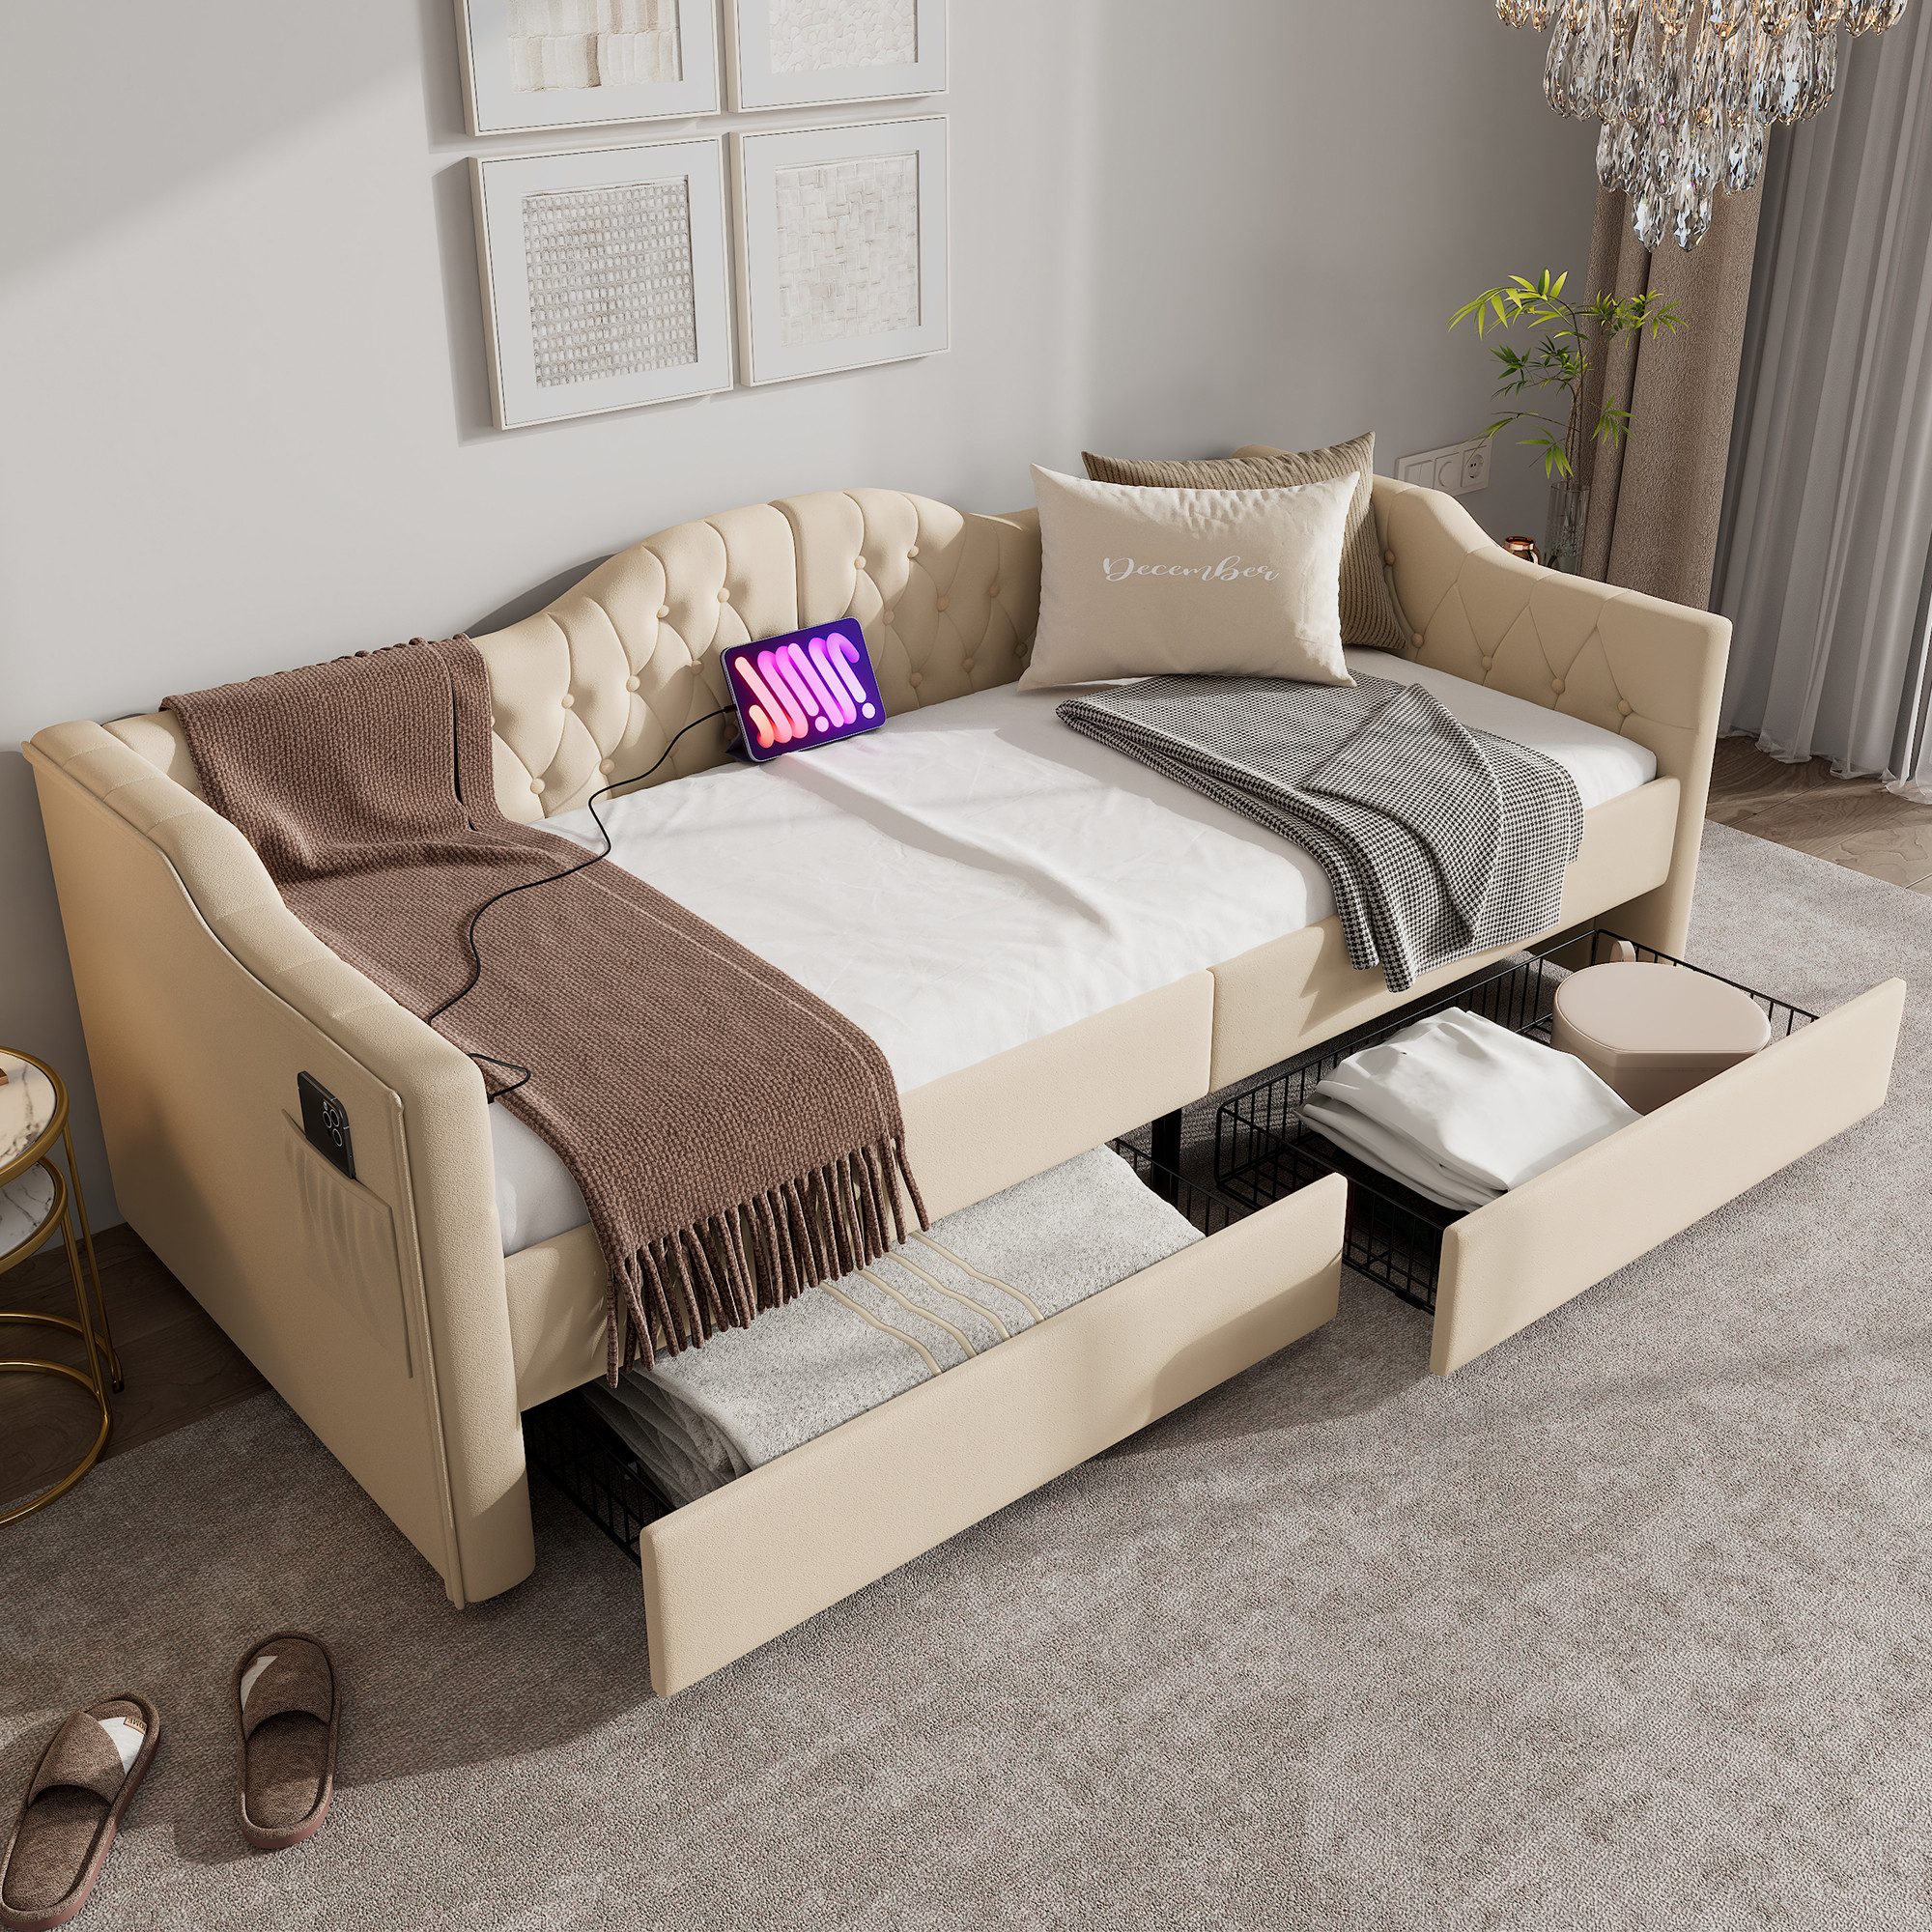 MODFU Daybett Tagesbett Schlafsofa (90x190cm), mit USB Type C Ladefunktion und 2 Schubladen